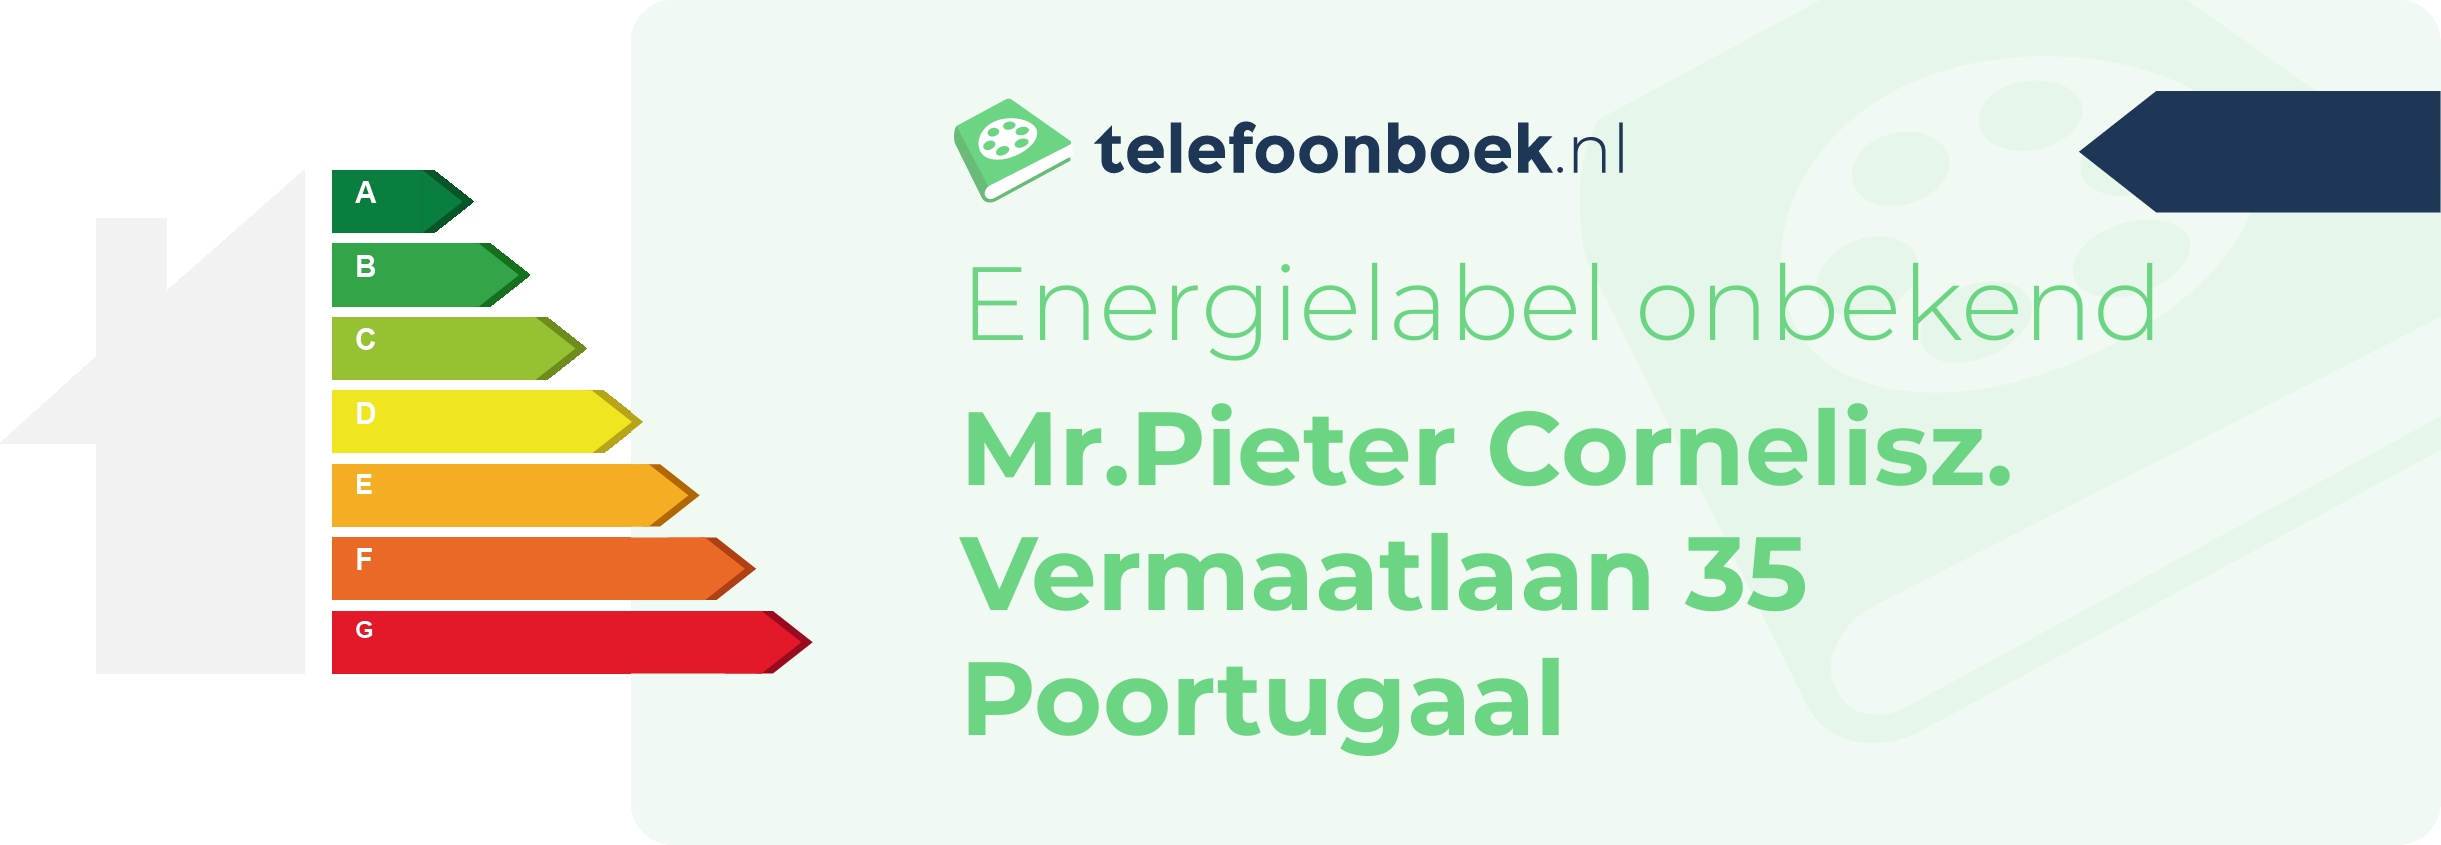 Energielabel Mr.Pieter Cornelisz. Vermaatlaan 35 Poortugaal